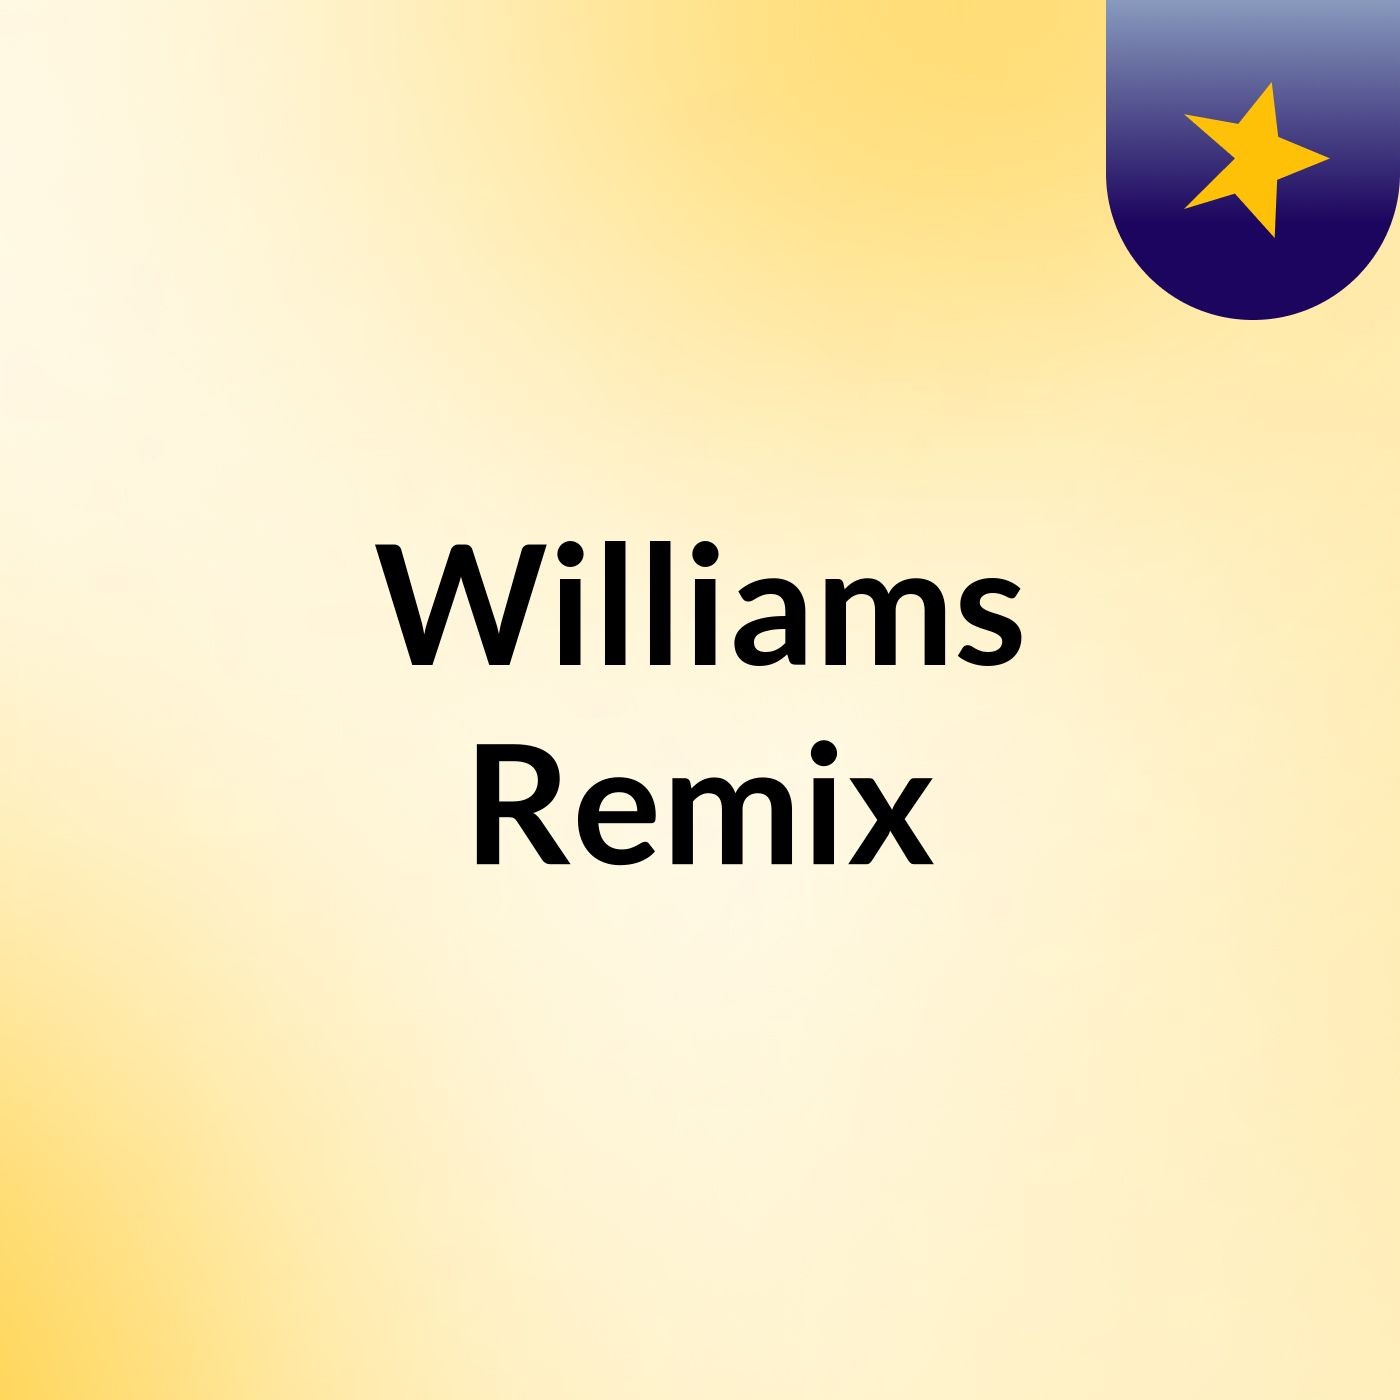 Williams Remix